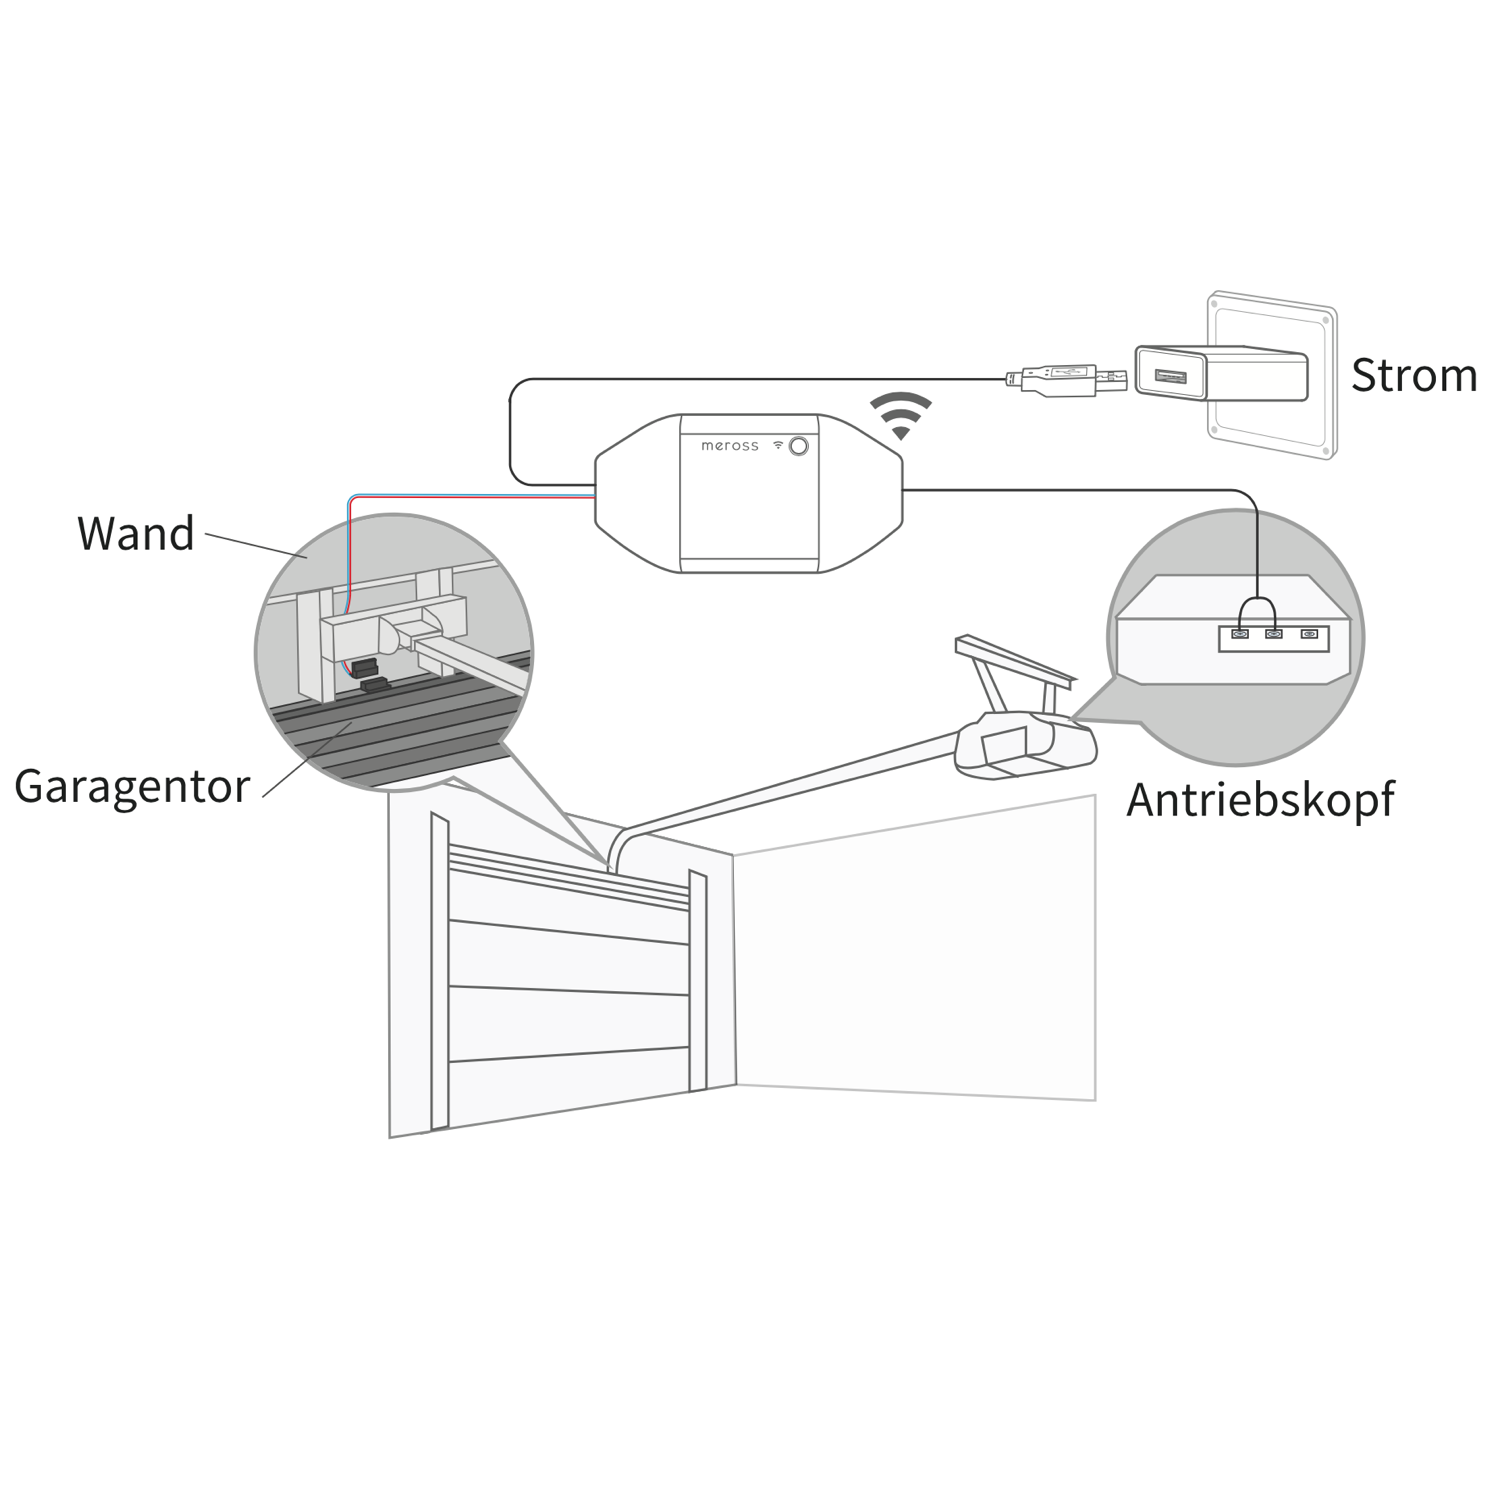 Installation - Homekit garage door smart receiver